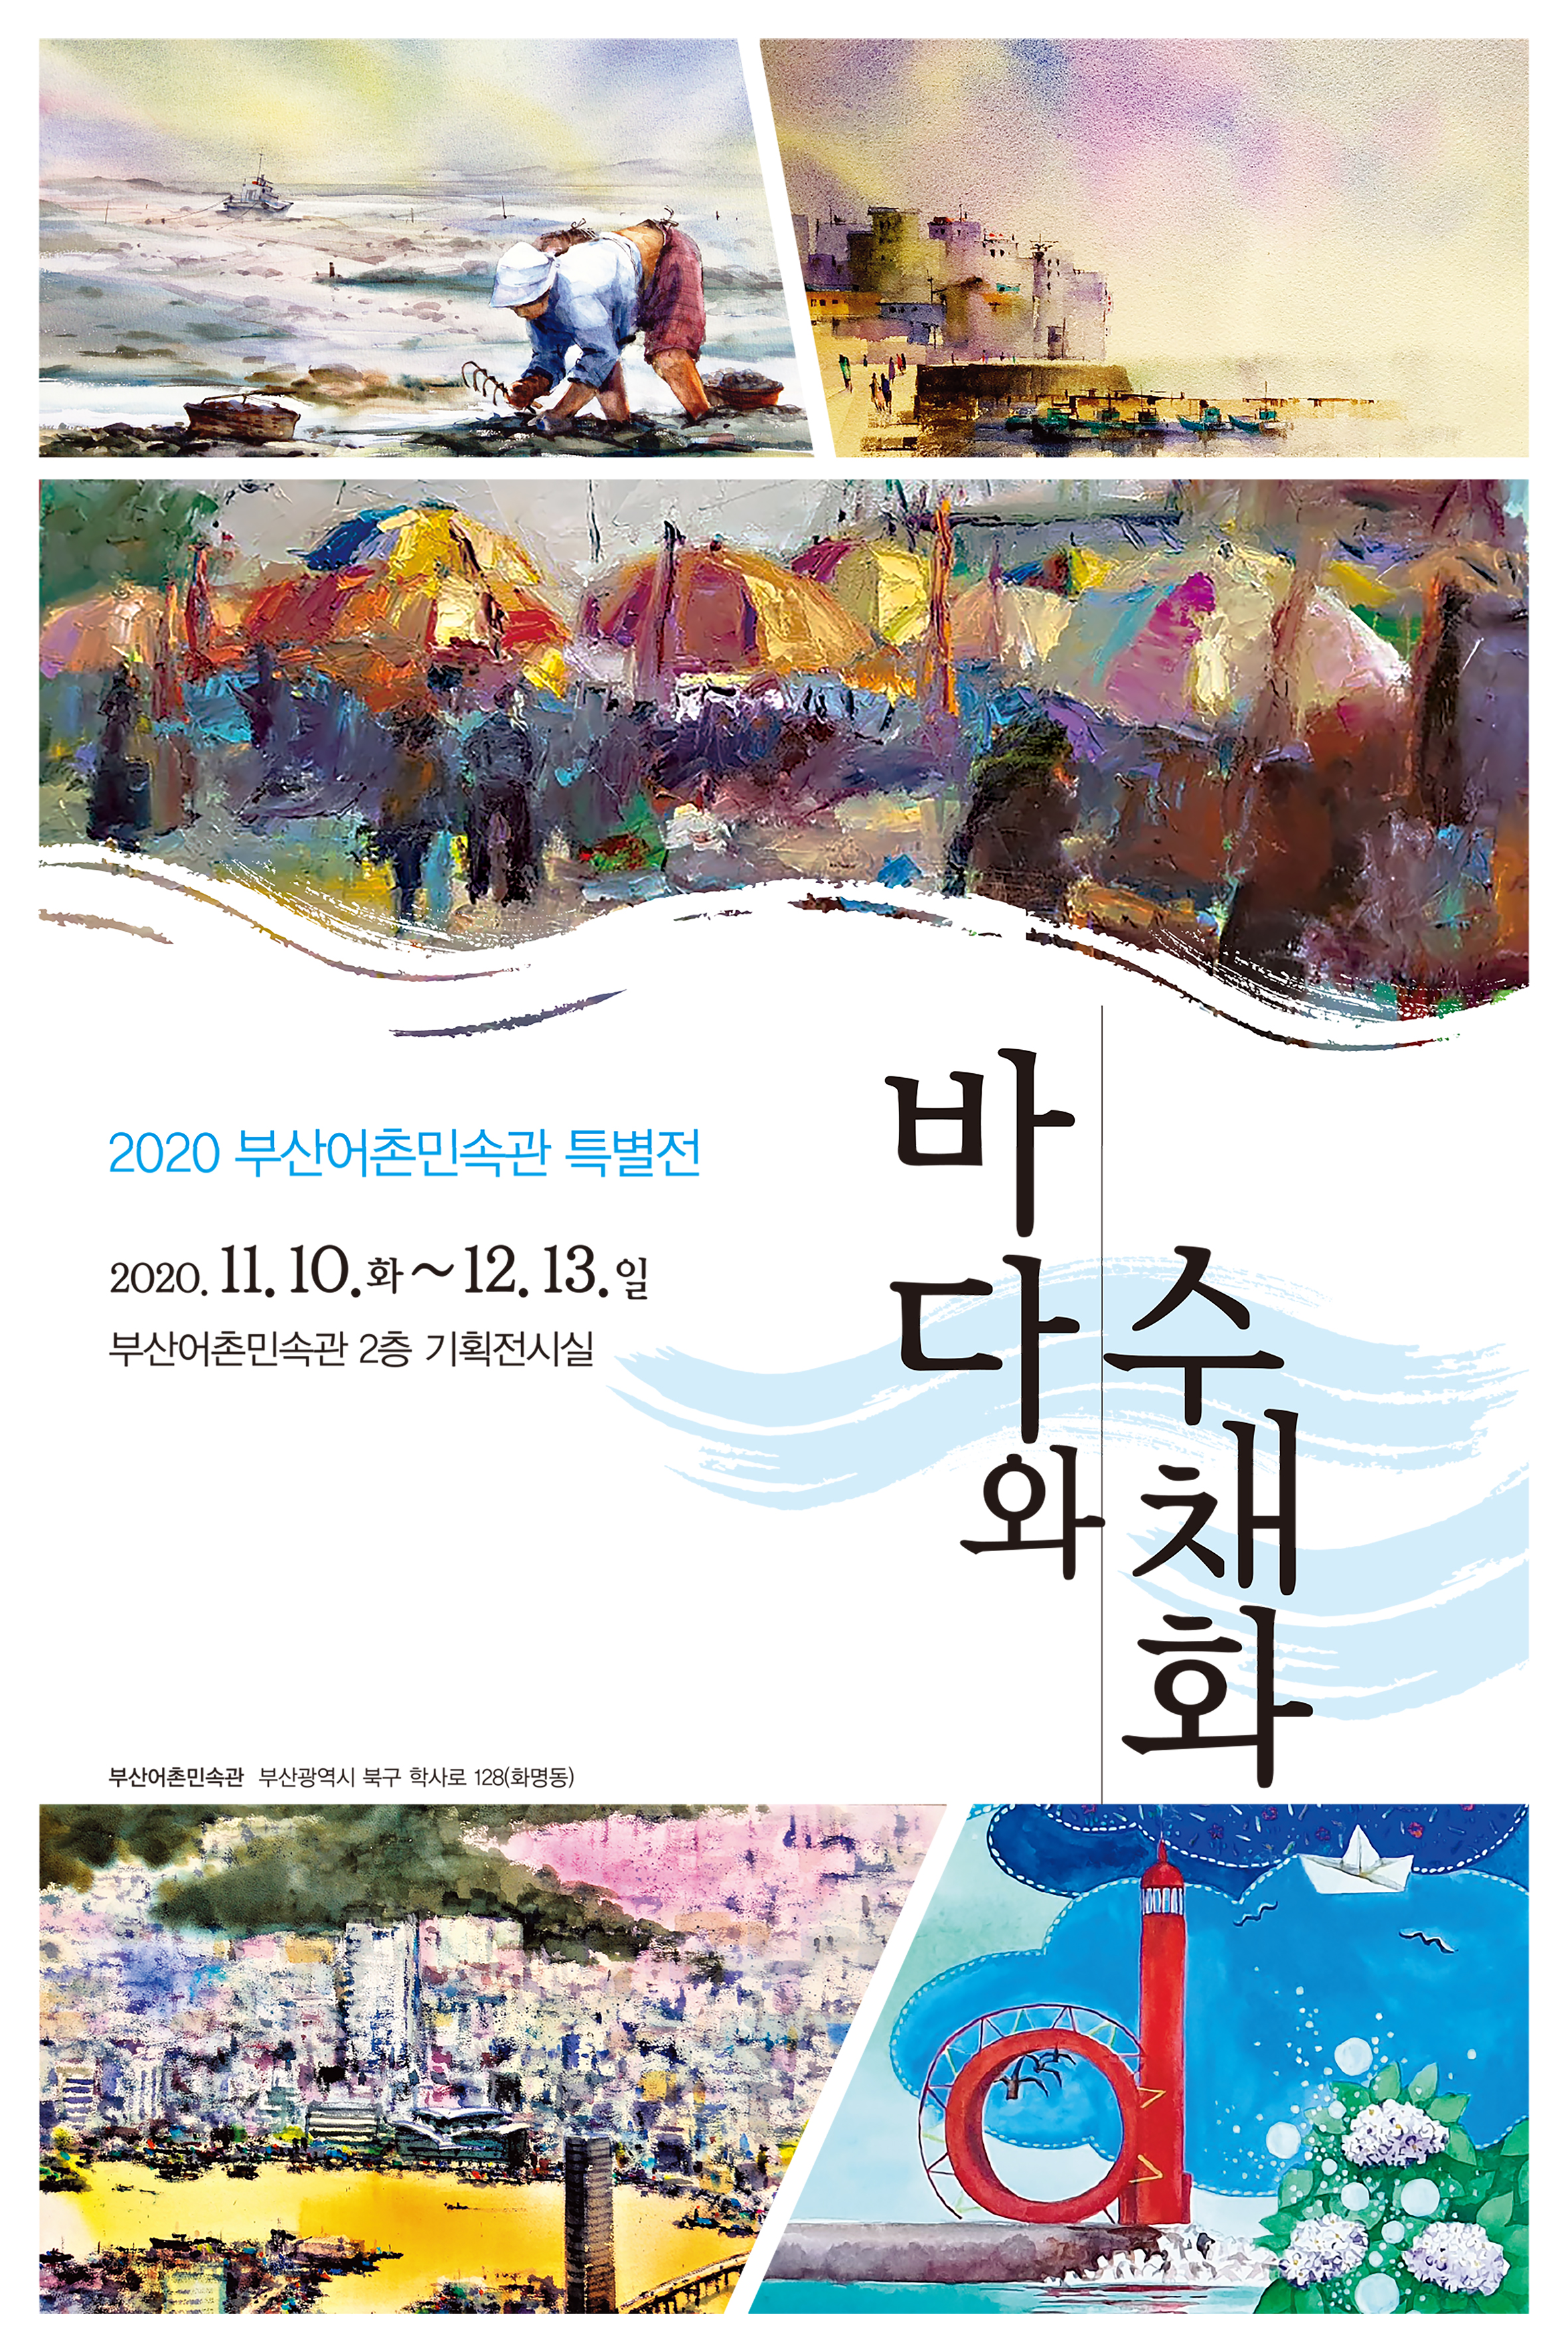 어촌박물관 바다와수채화 특별전 포스터-600900(깸)3.jpg